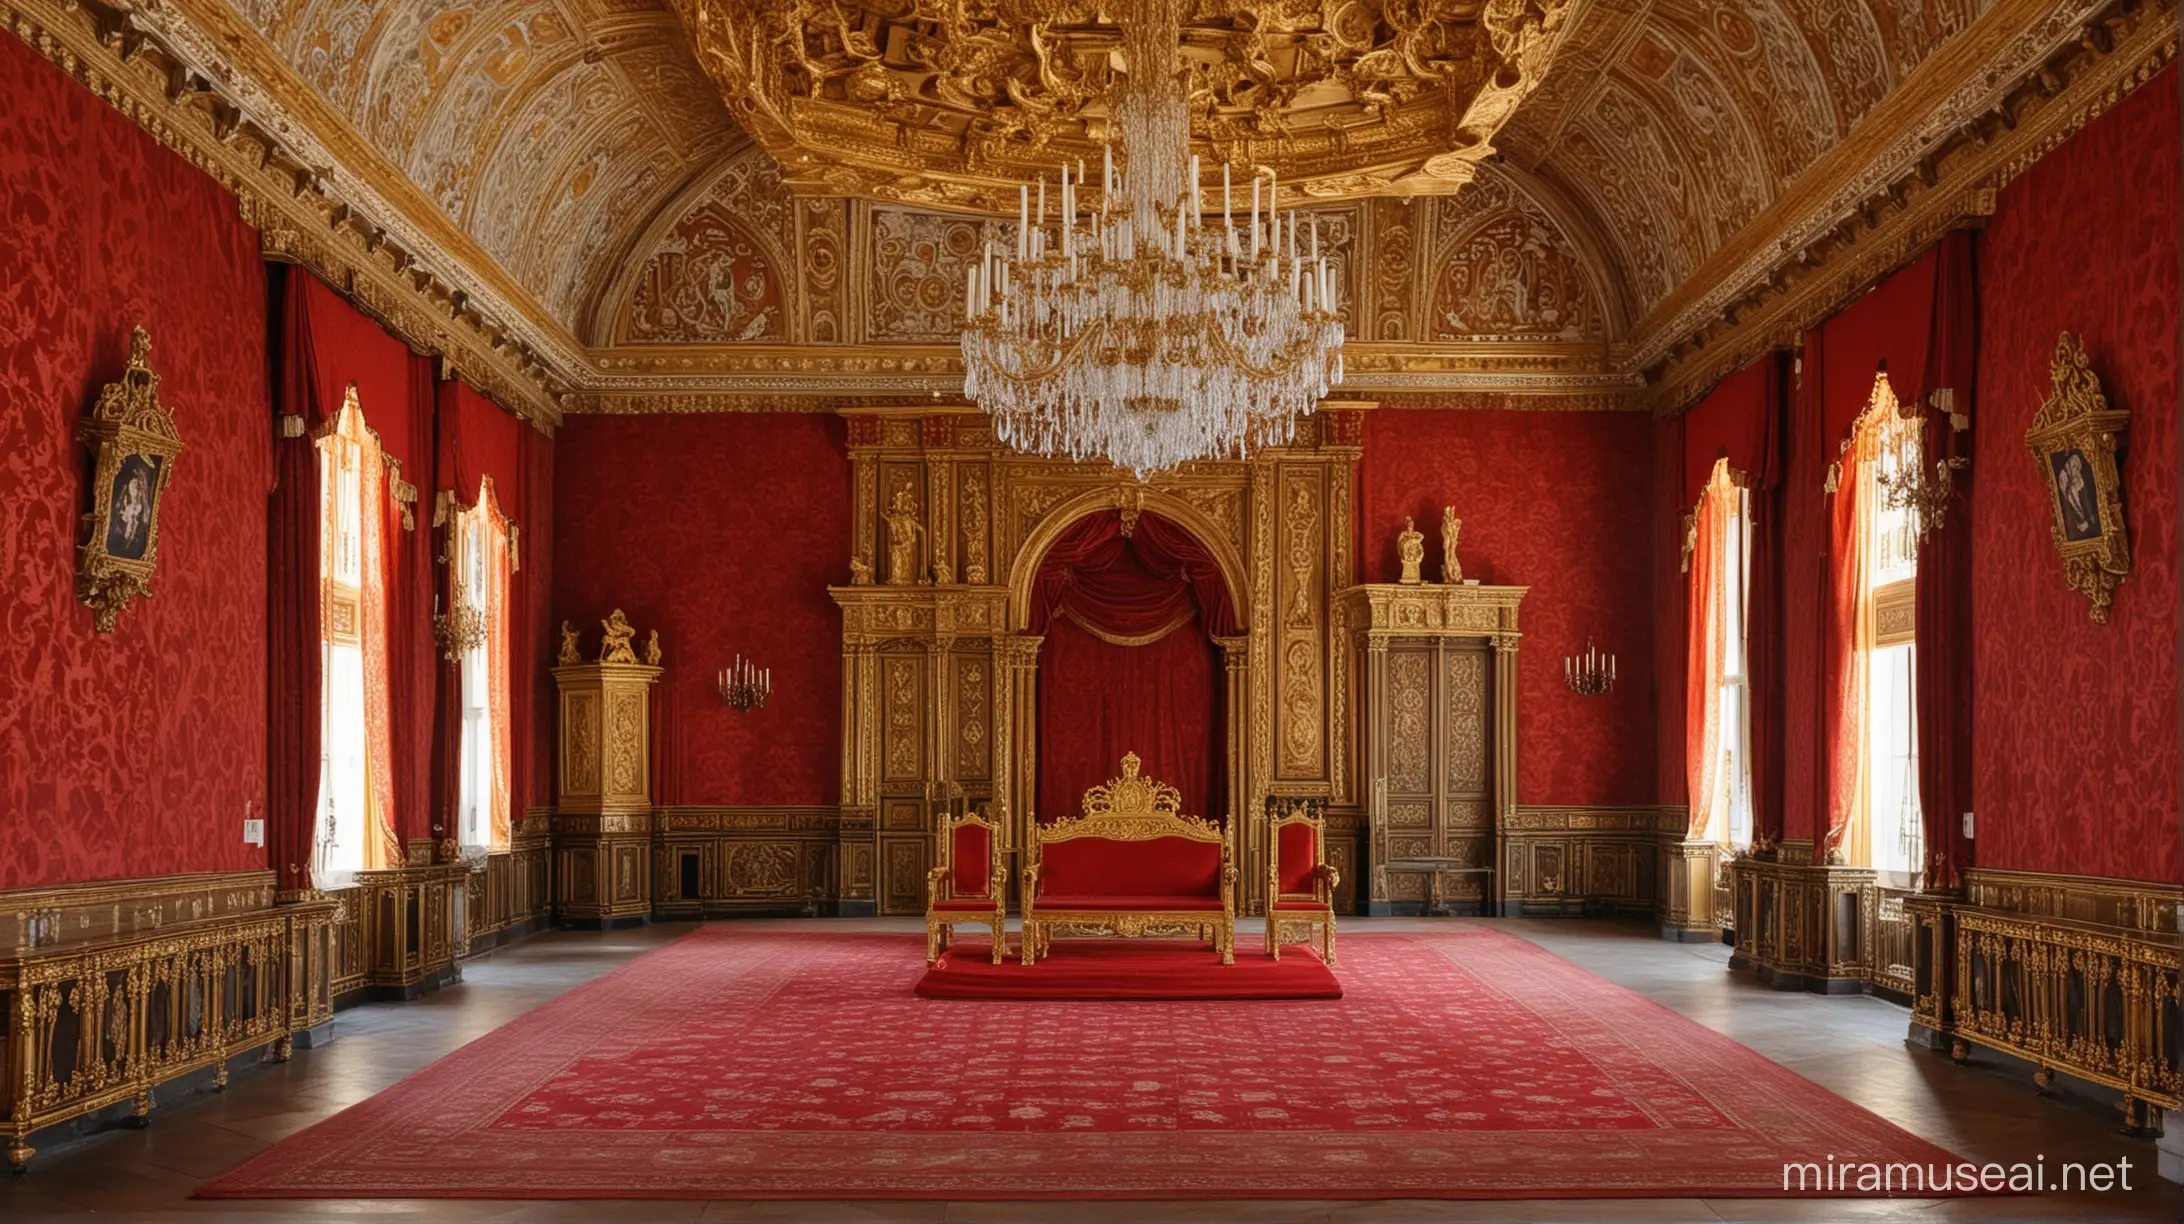 Opulent Throne Hall of Queen Elizabeth I